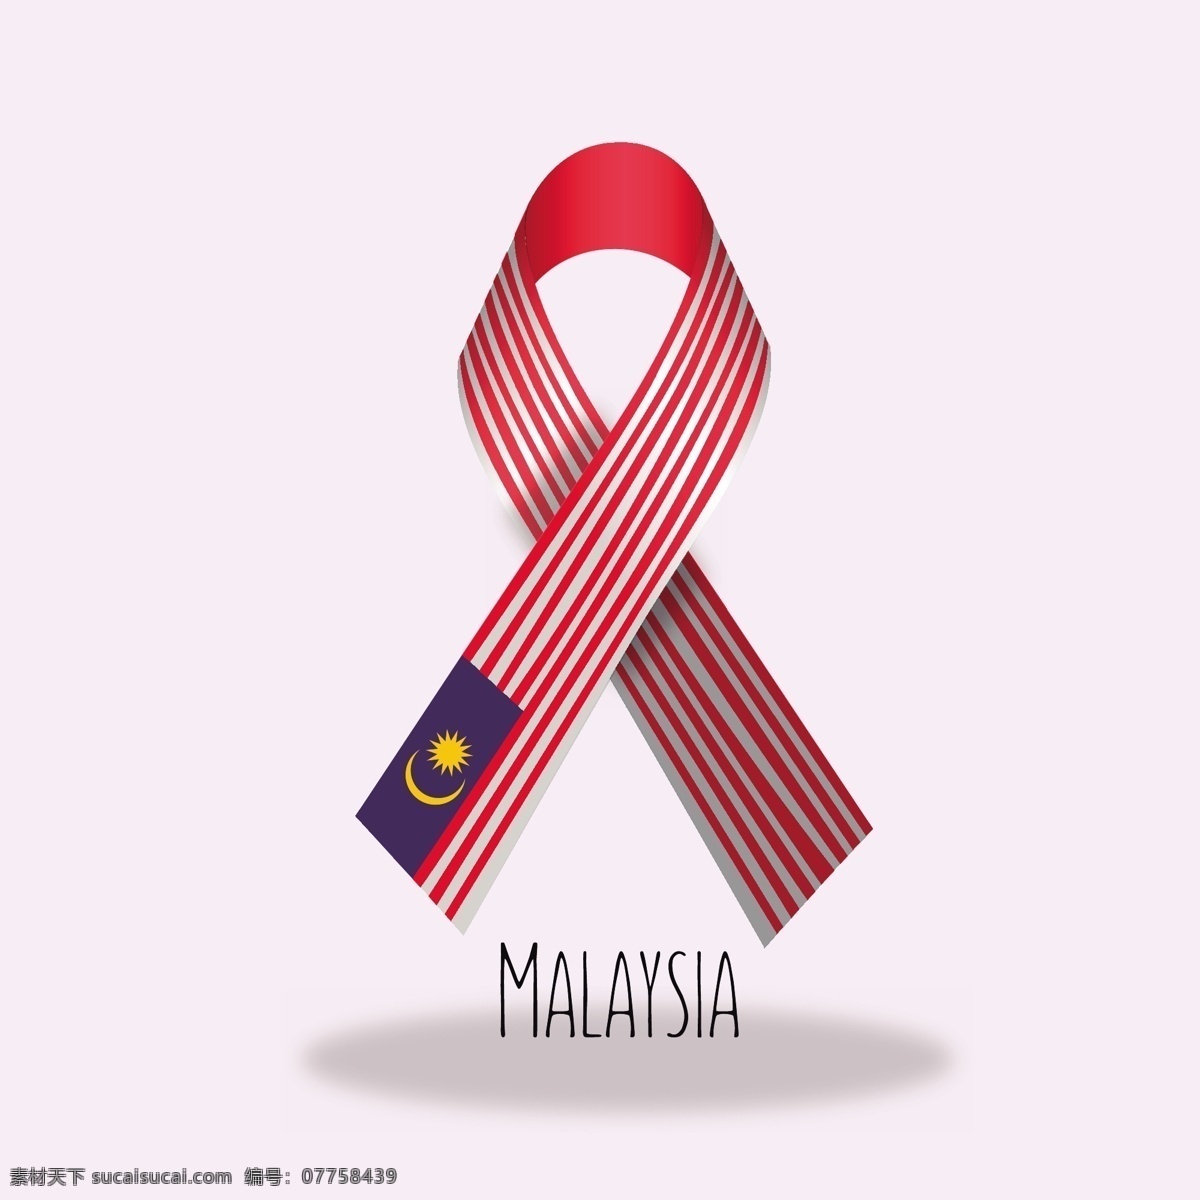 马来西亚 旗 带 背景 旗帜 丝带 图案 横幅 墙纸 横幅背景 装饰 彩带横幅 徽章 国家 国旗 装饰背景 爱国